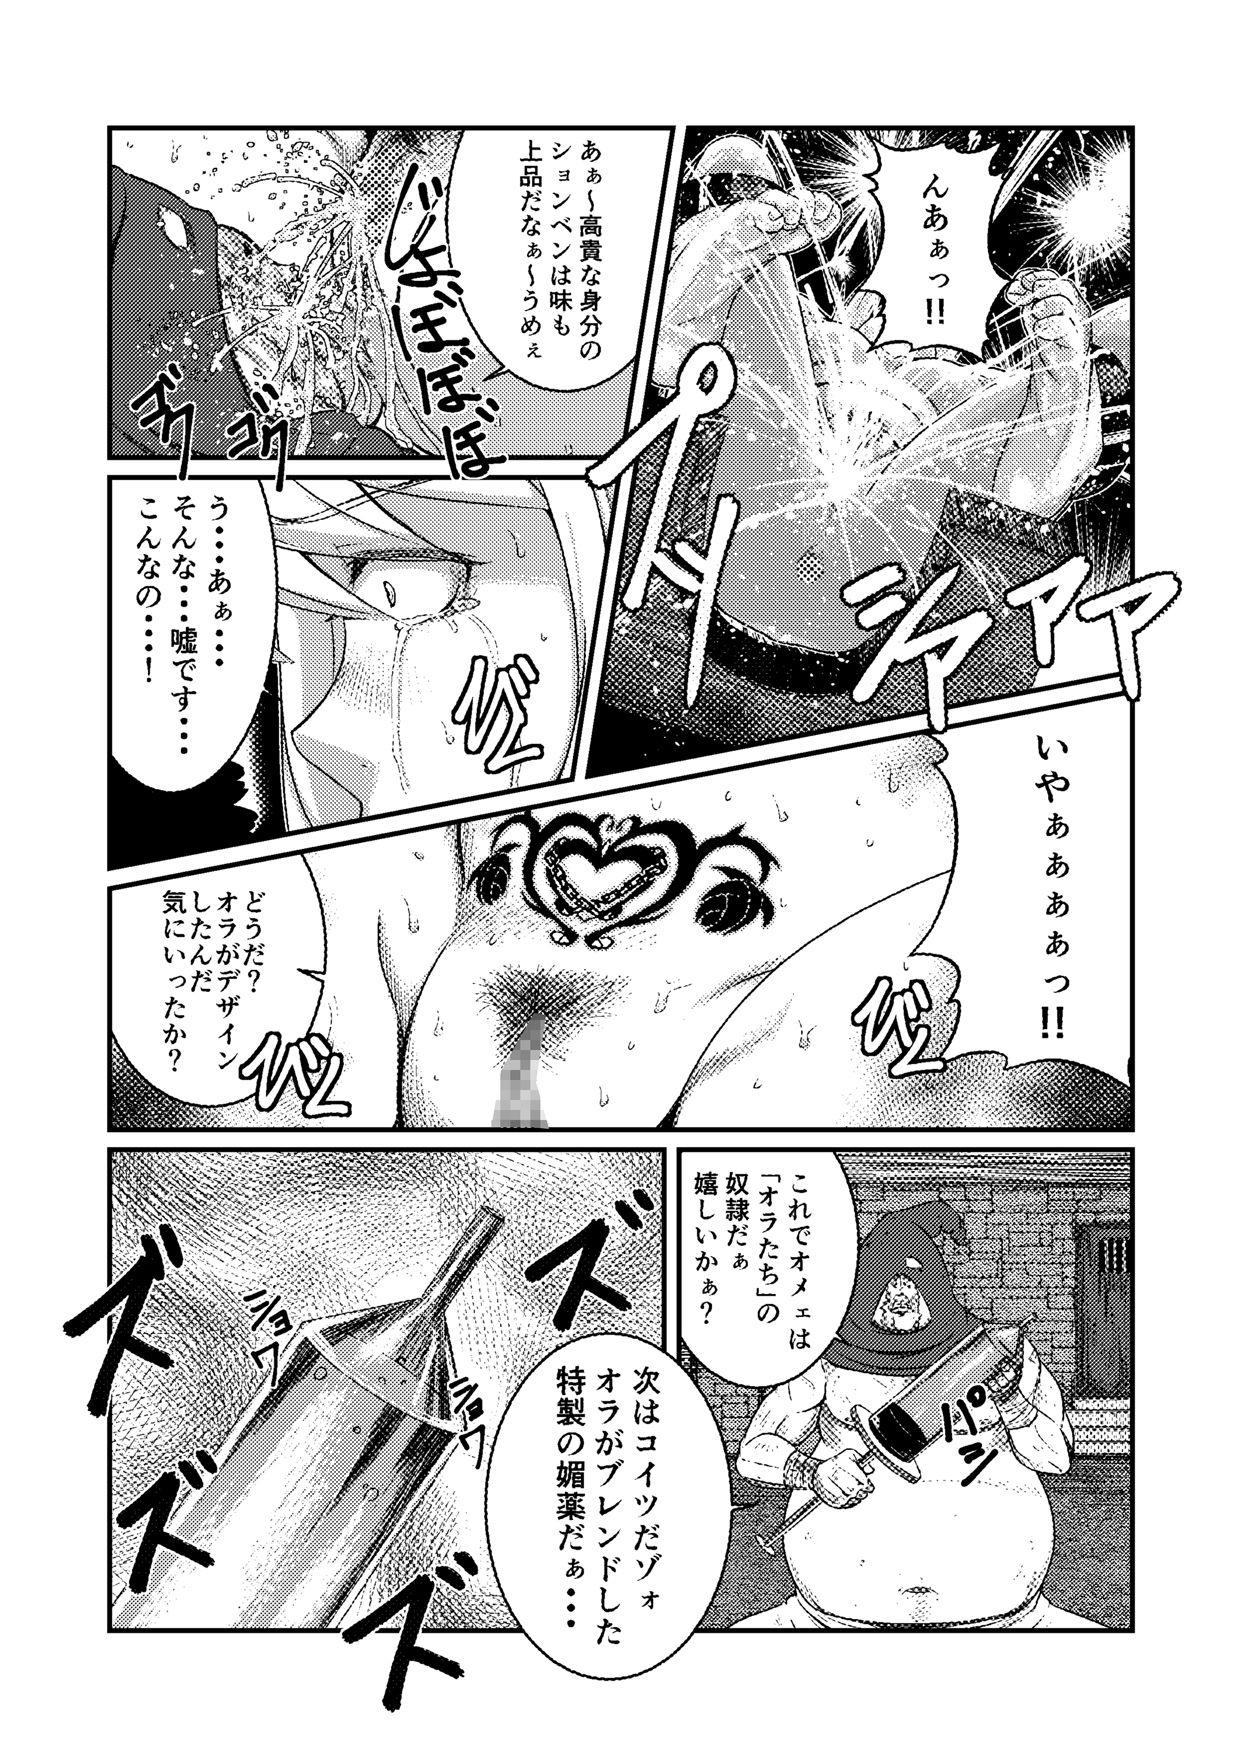 Glasses Toraware Ohime-sama - Tales of vesperia Cheat - Page 6